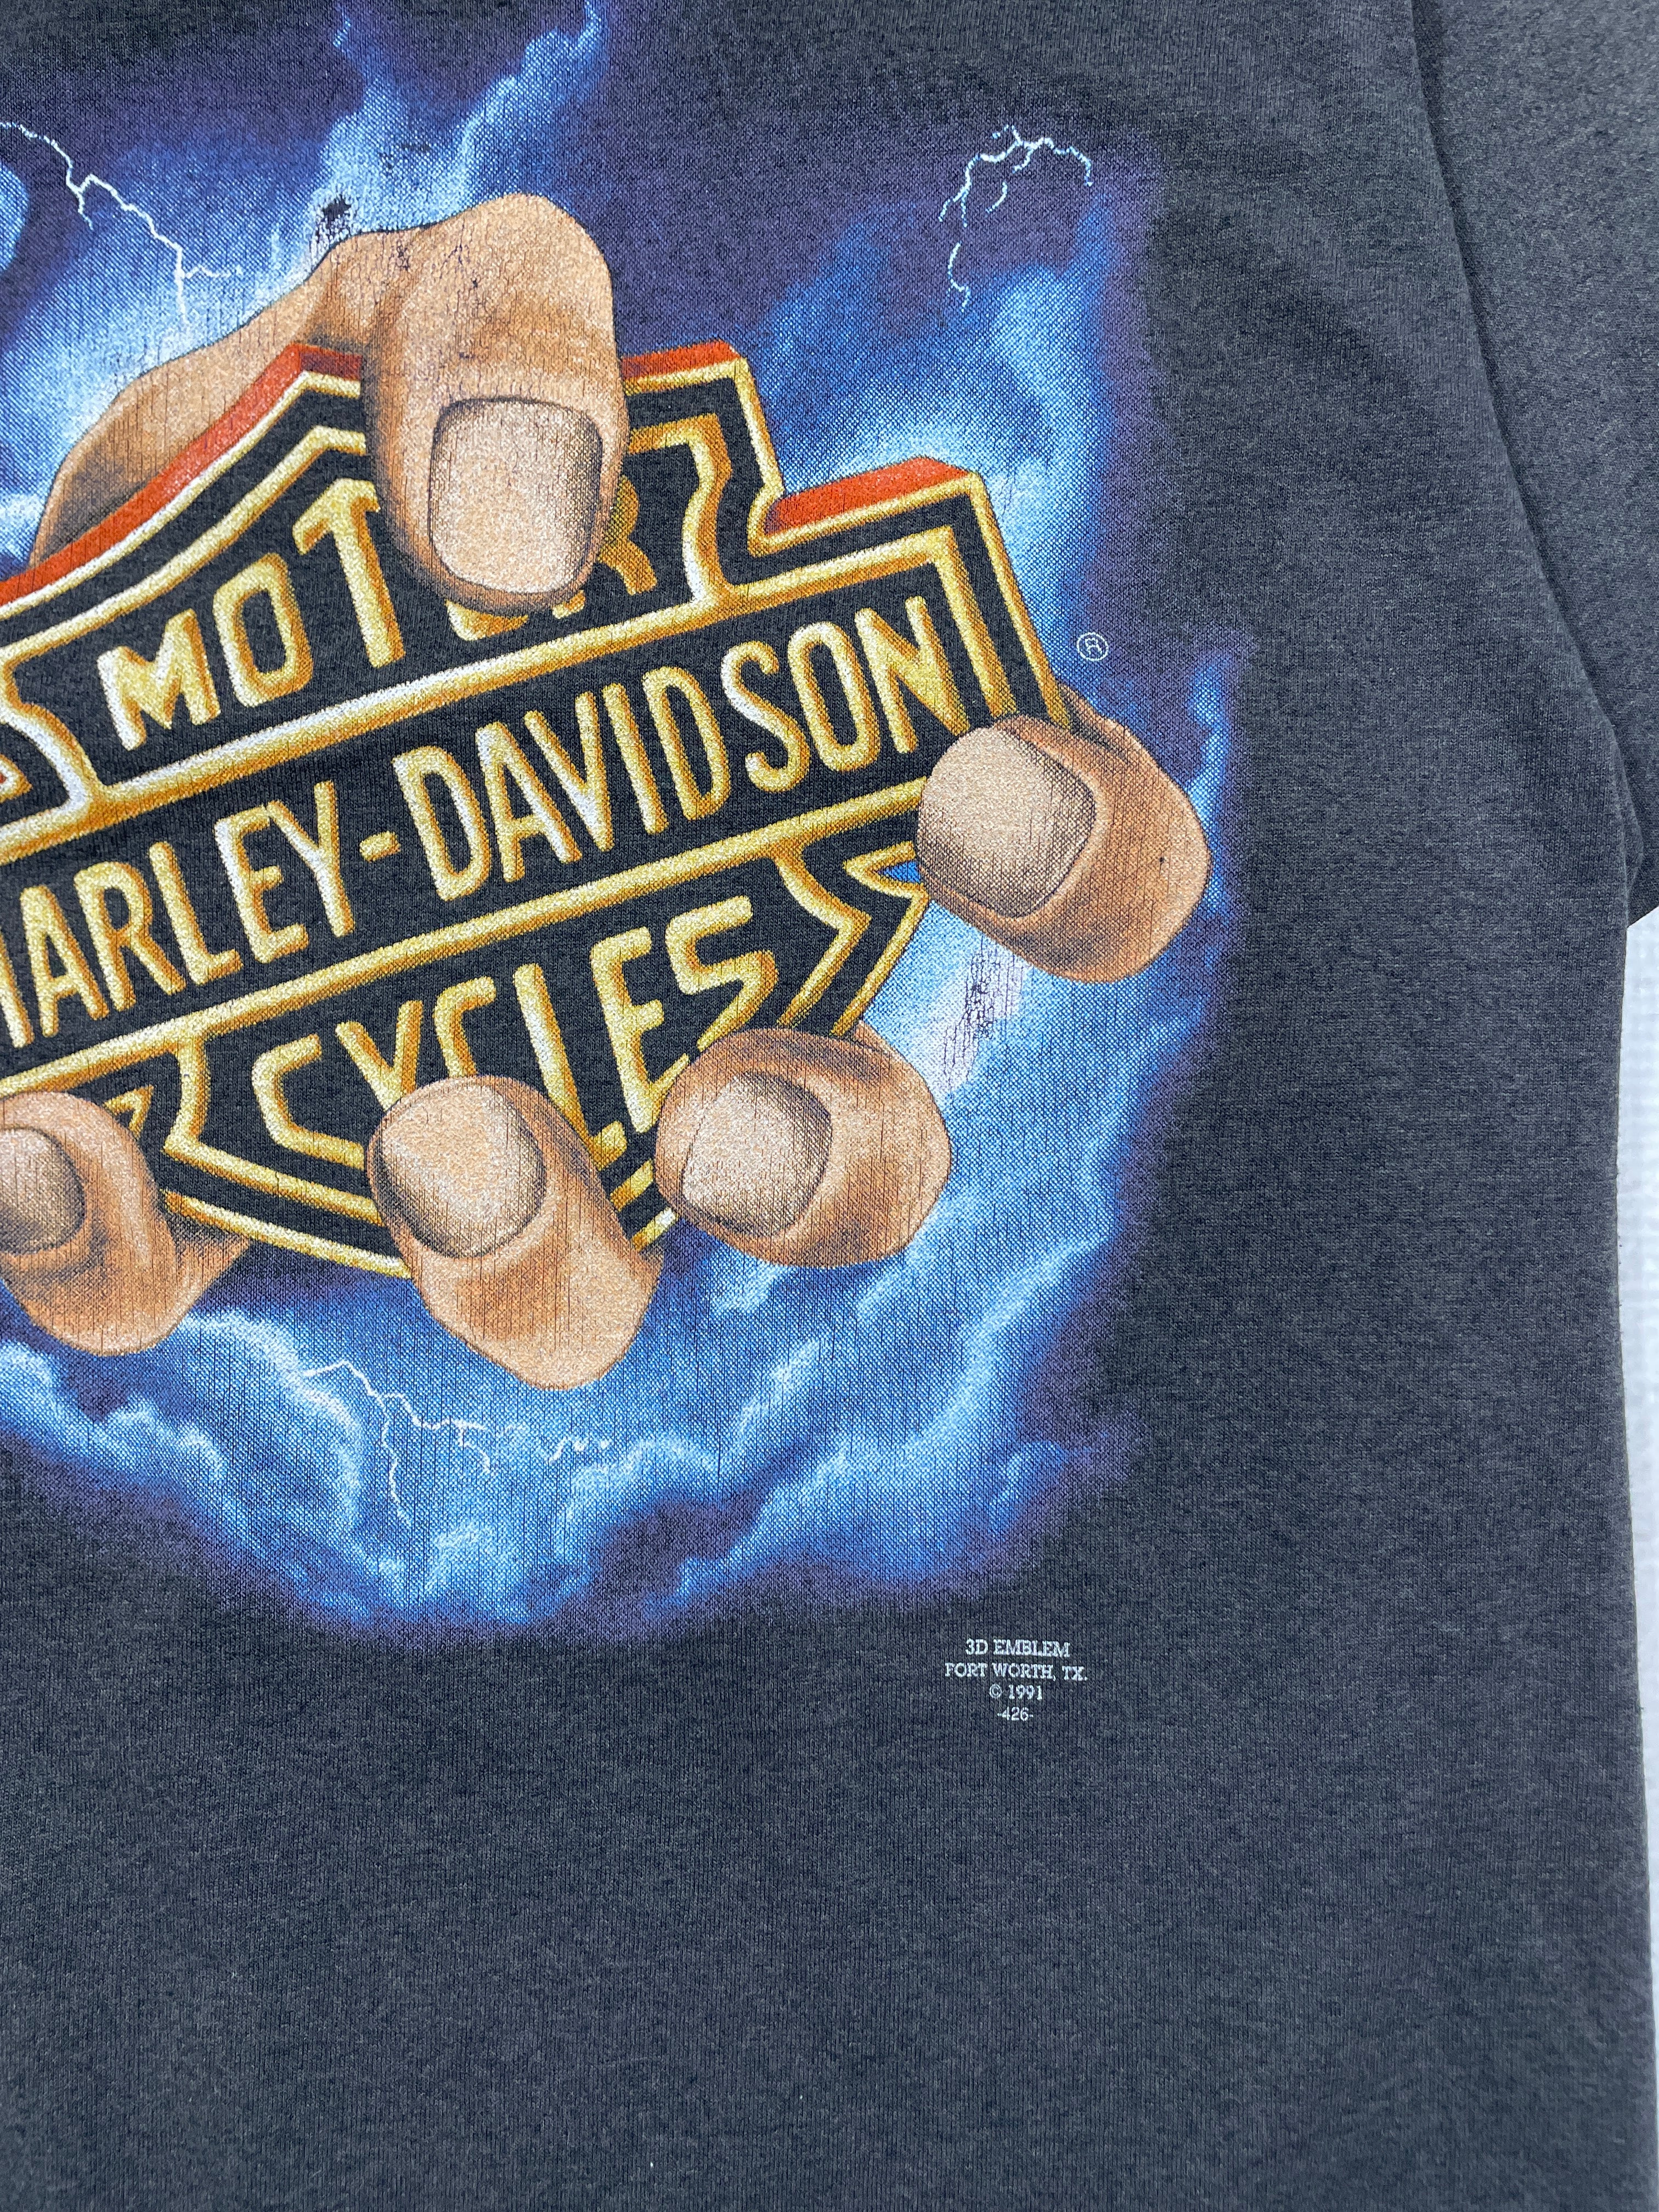 Vintage 1991 Harley Davidson 3D Emblem T-Shirt - Men's Small